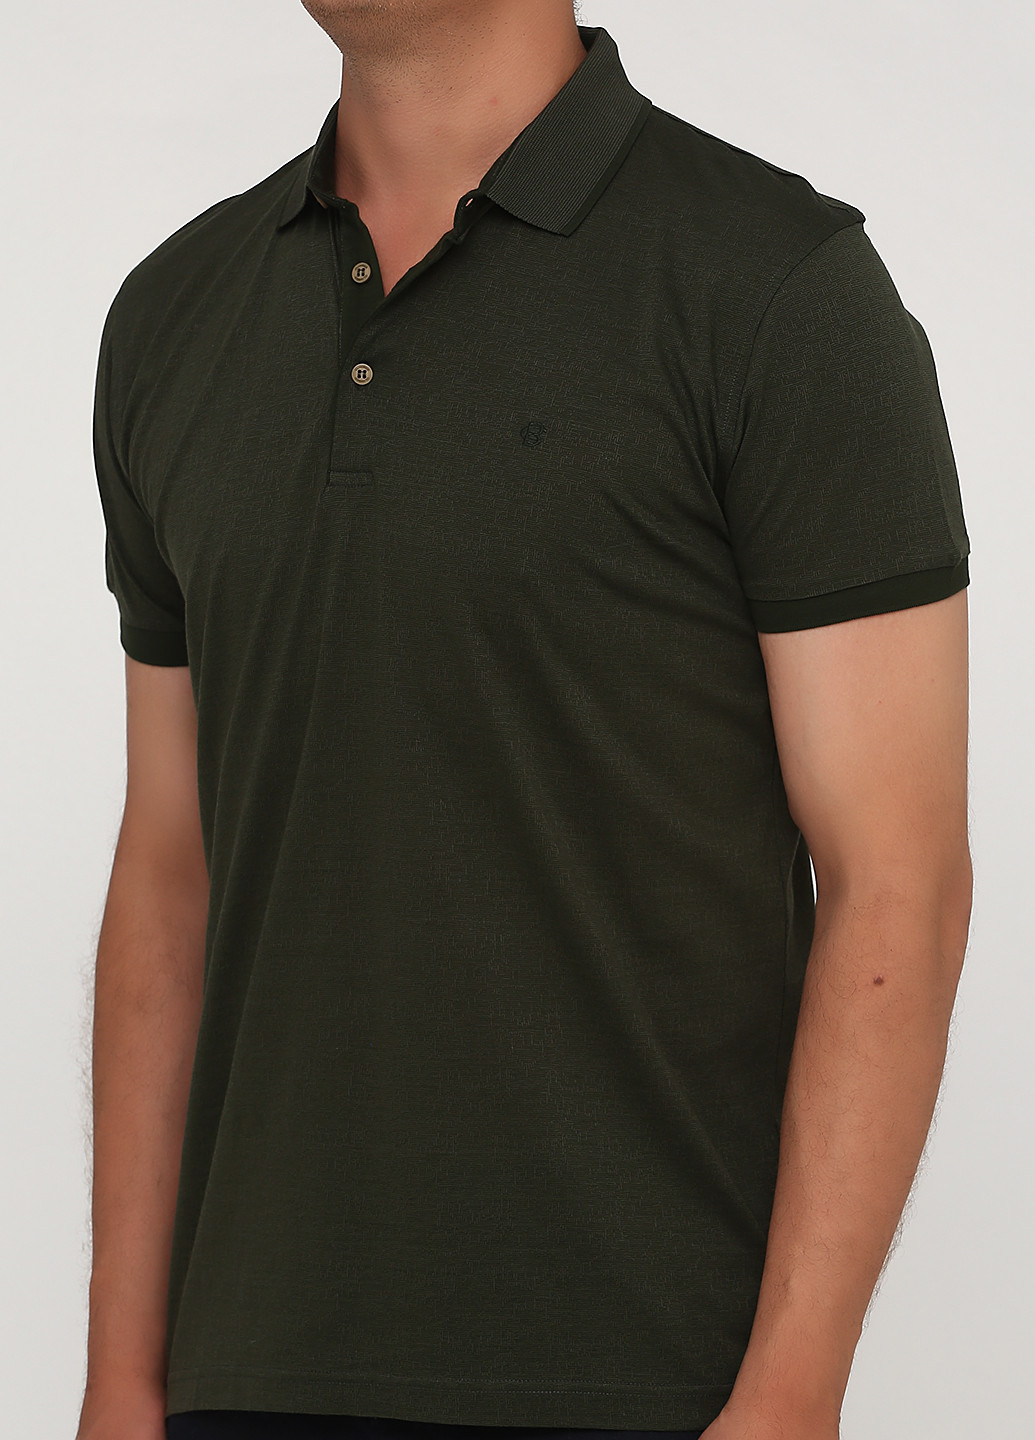 Оливковая футболка-поло для мужчин Climber с абстрактным узором